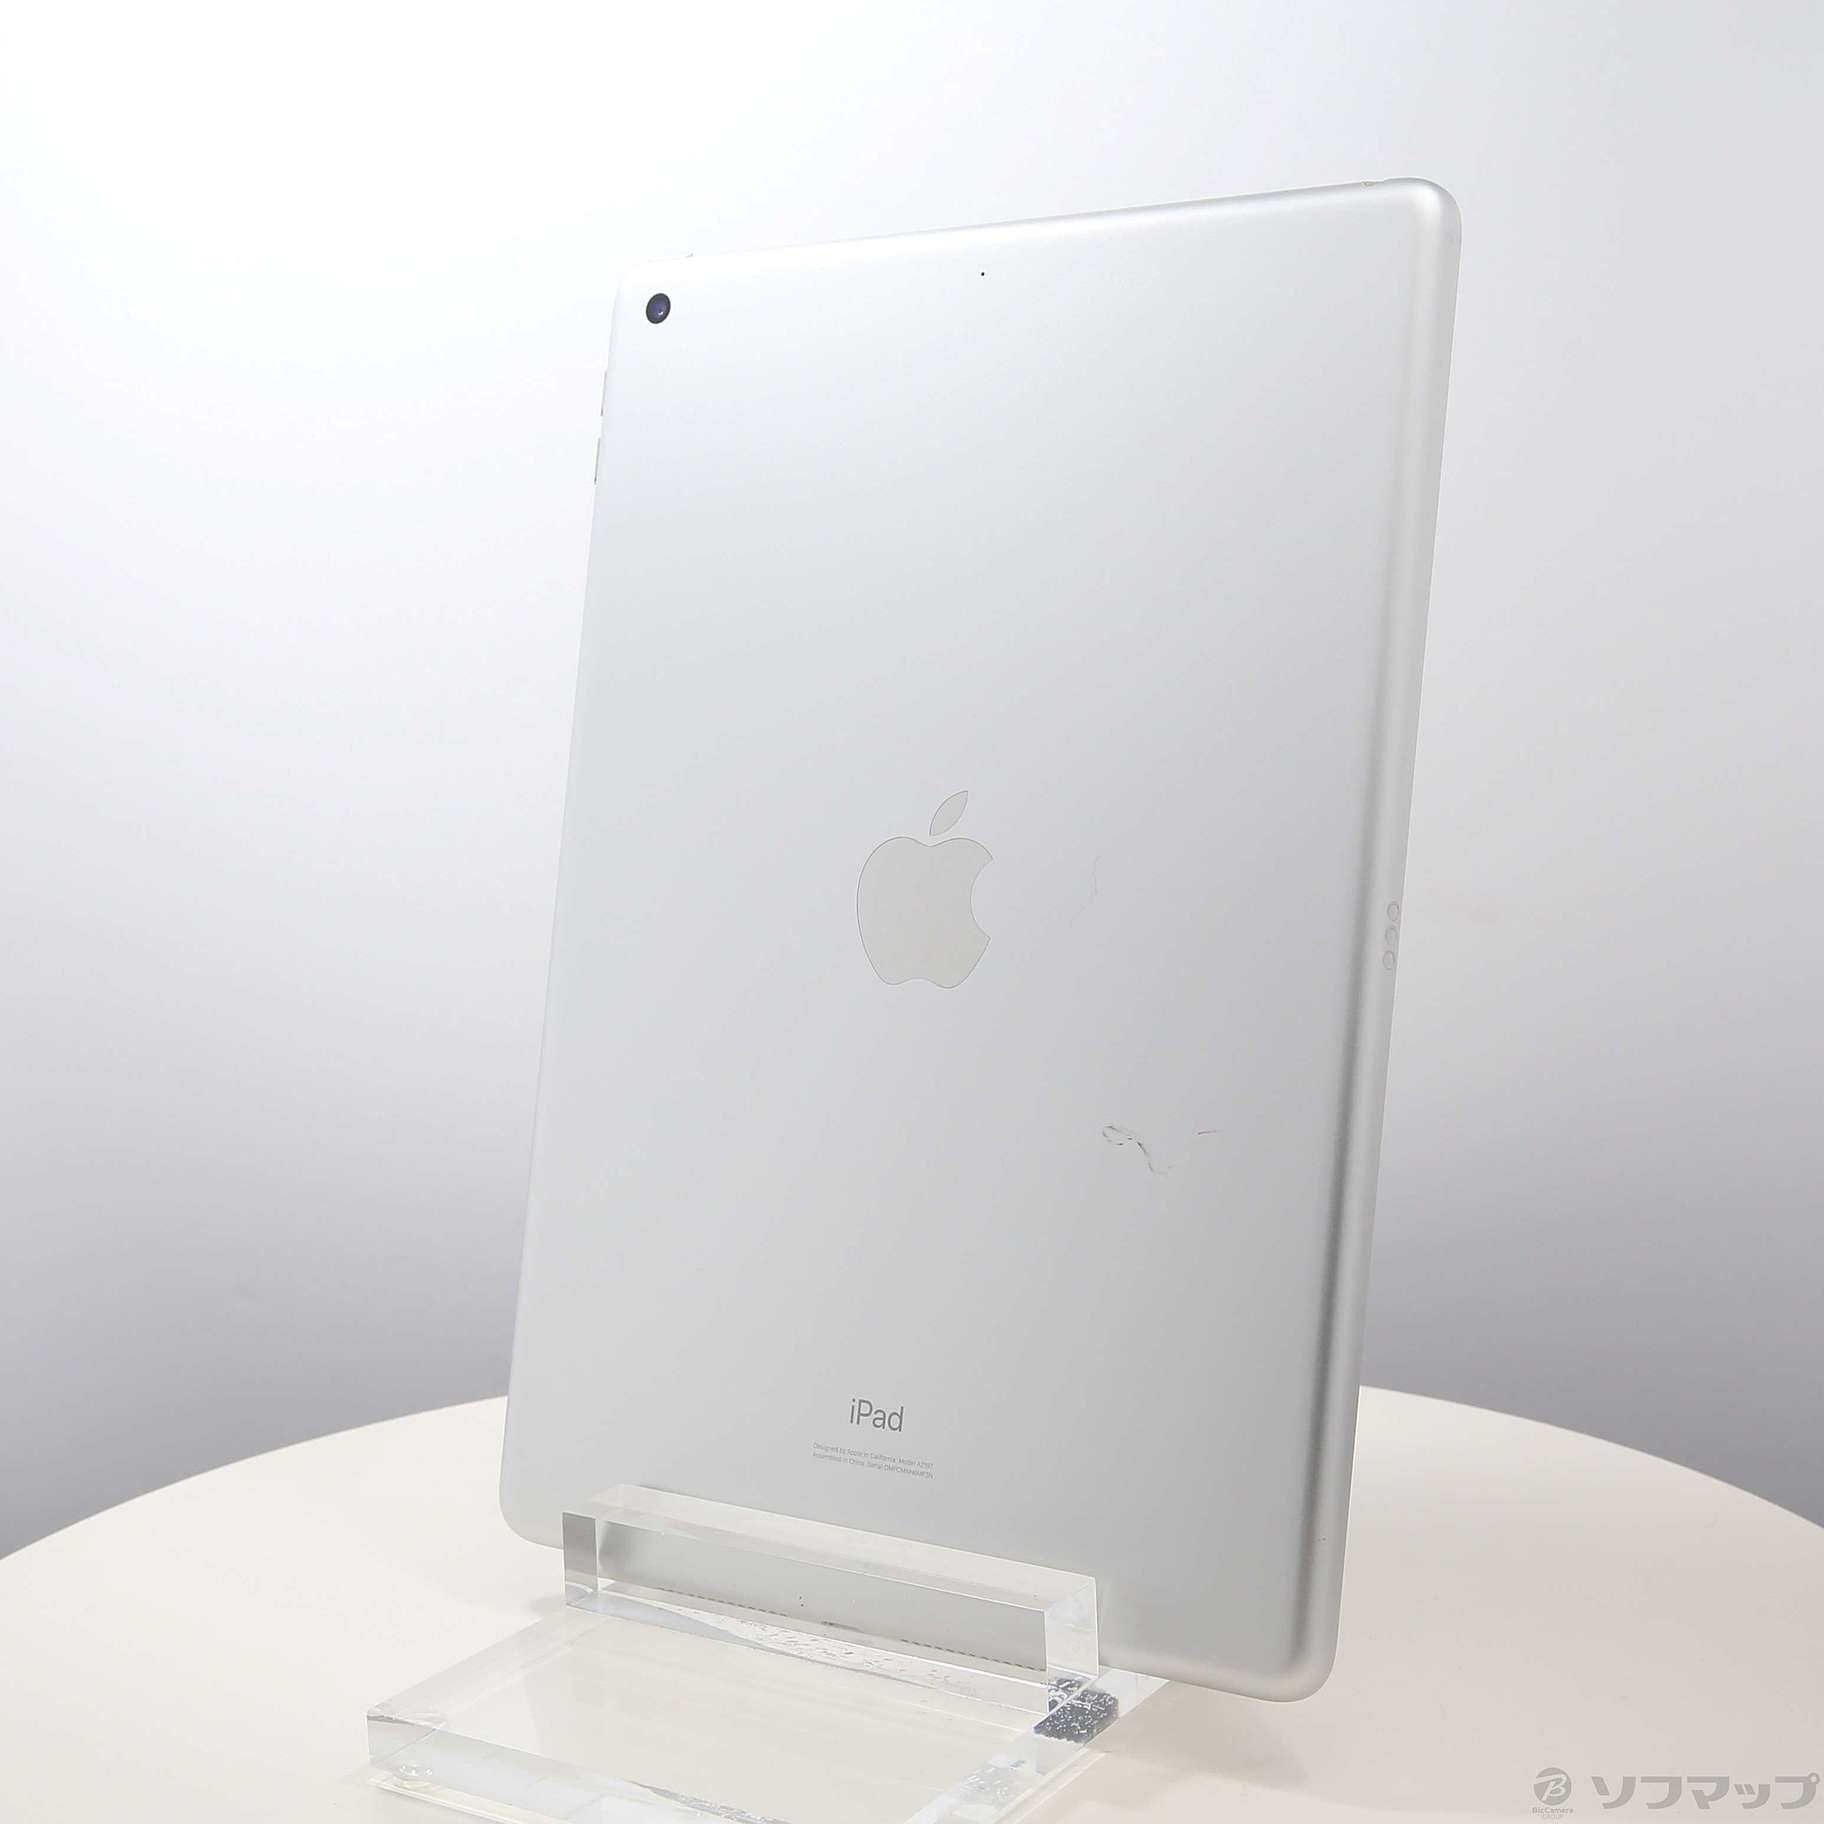 (中古)Apple iPad 第7世代 32GB シルバー MW752J/A Wi-Fi(276-ud)